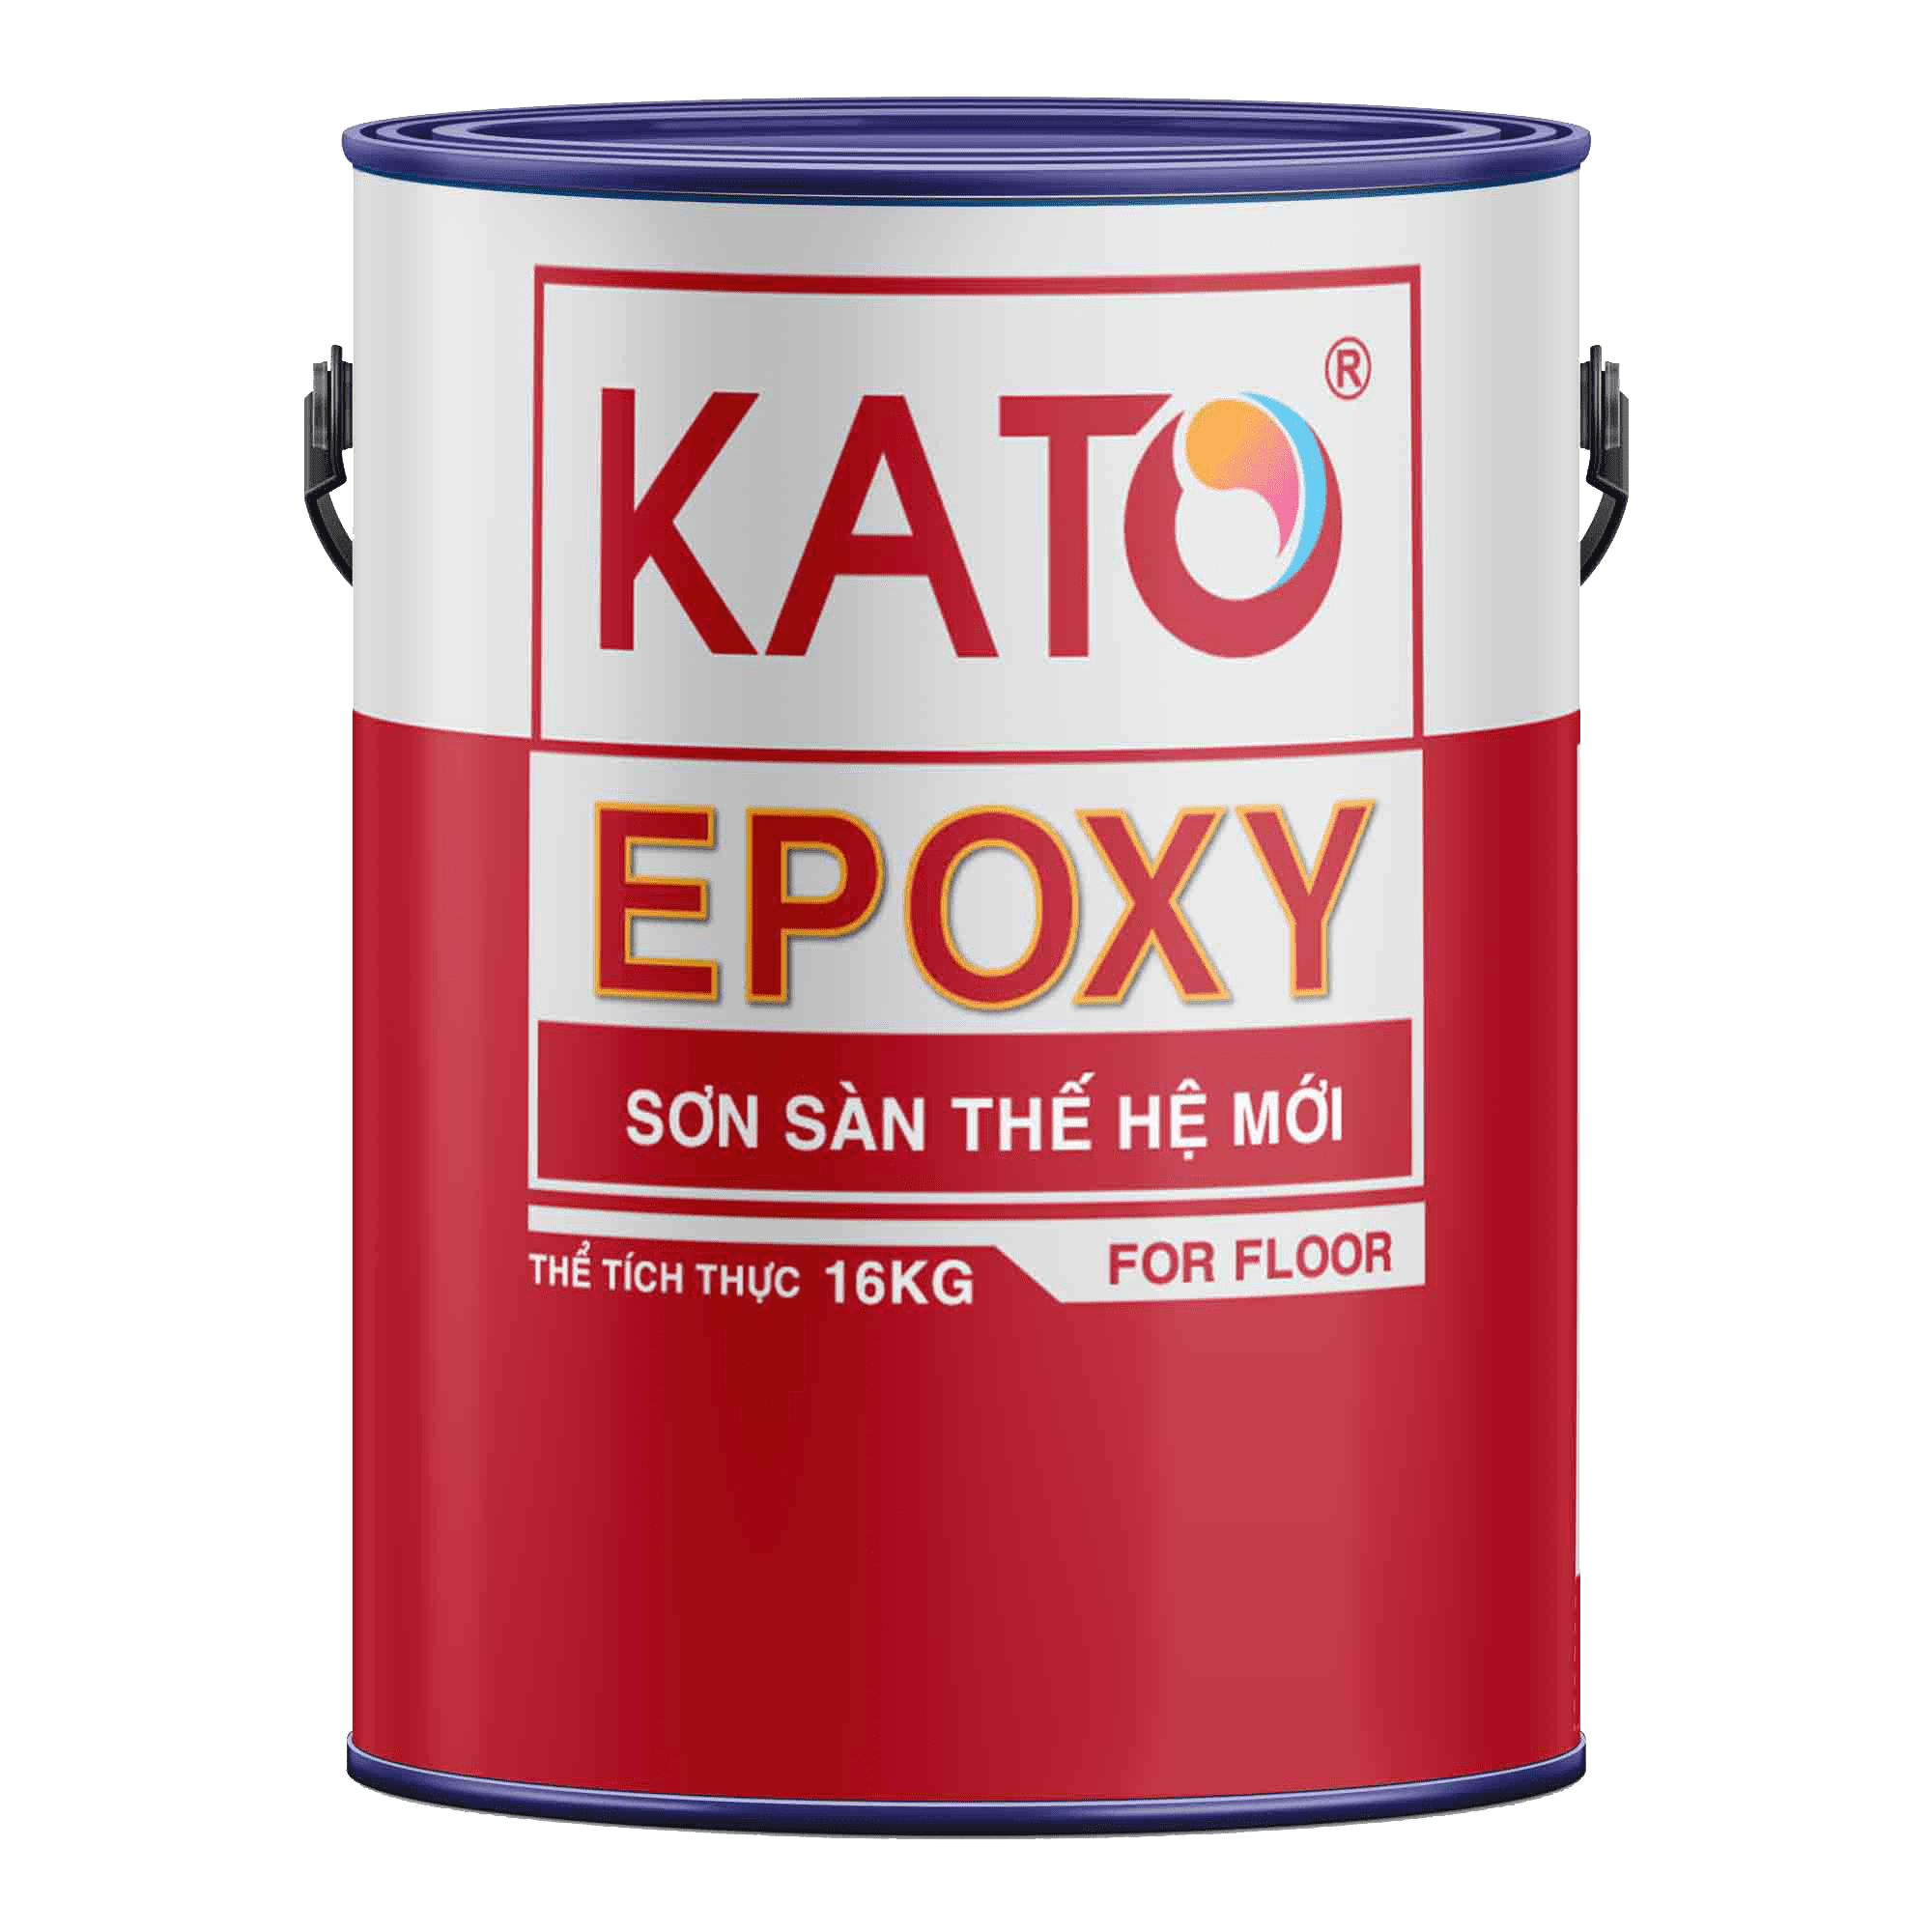 Epoxy-goc-nuoc-min